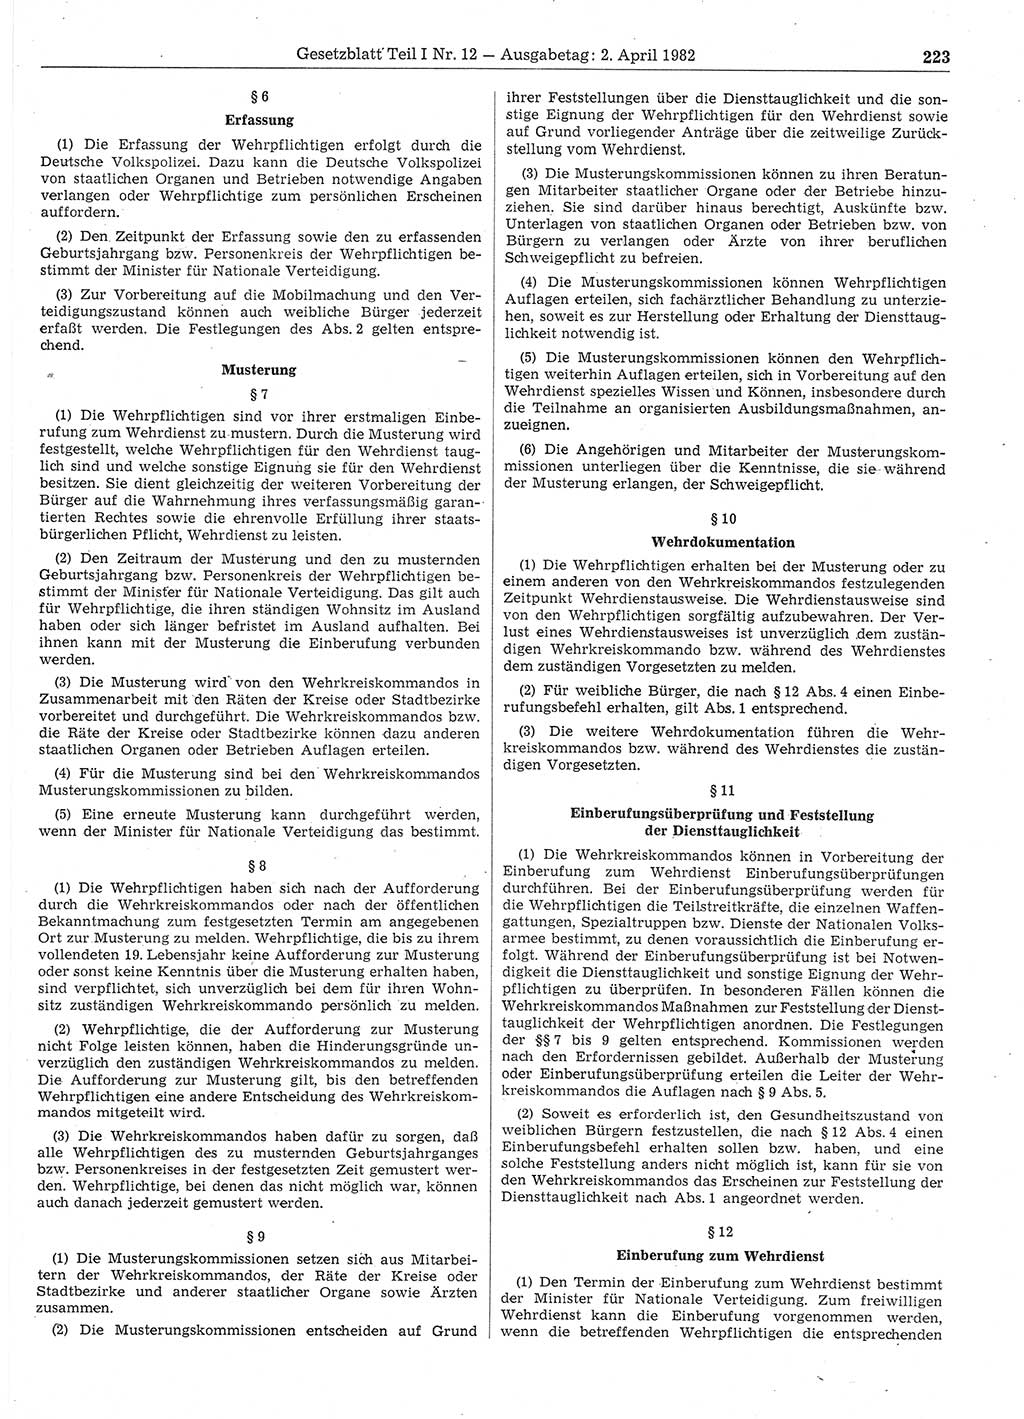 Gesetzblatt (GBl.) der Deutschen Demokratischen Republik (DDR) Teil Ⅰ 1982, Seite 223 (GBl. DDR Ⅰ 1982, S. 223)